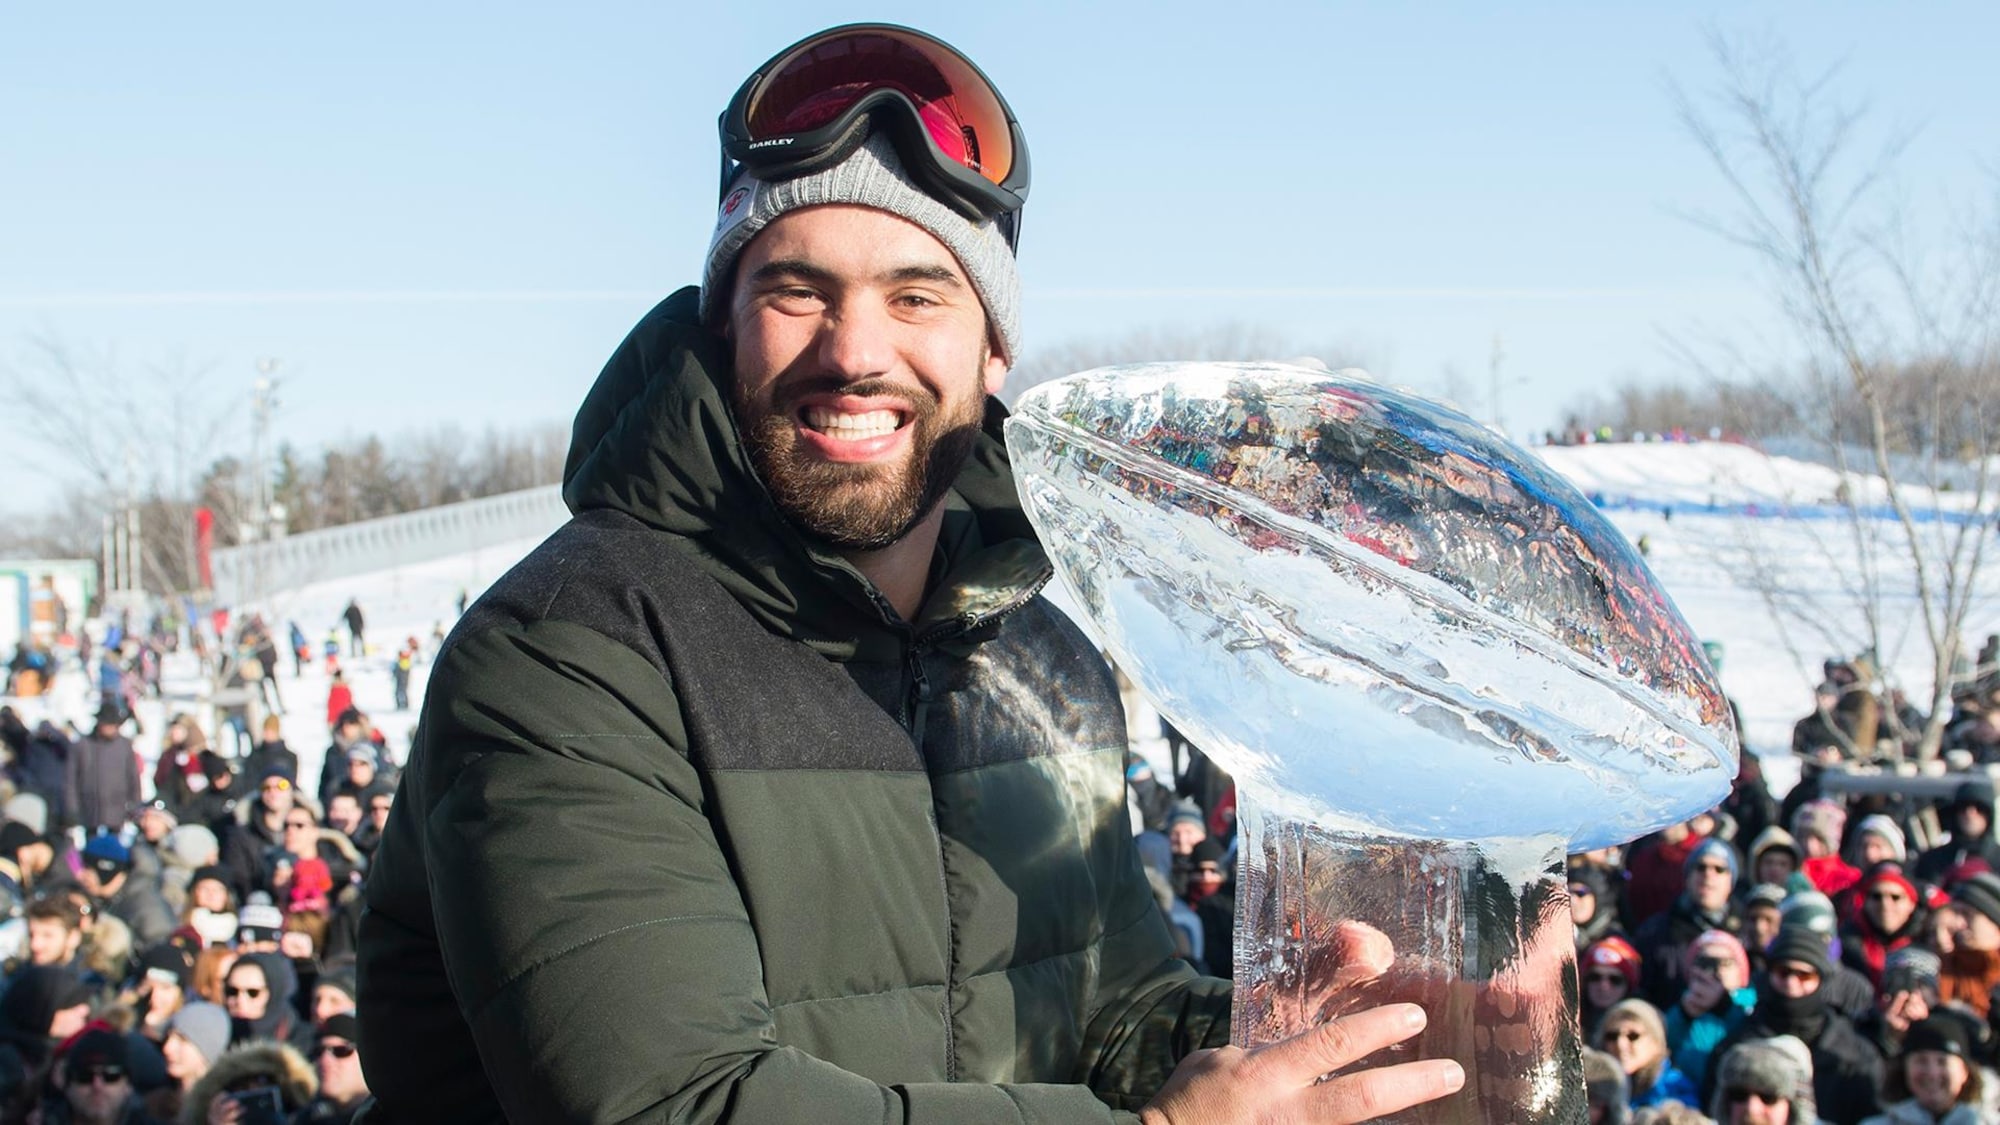 Un homme sourit en tenant une réplique en glace d'un trophée.